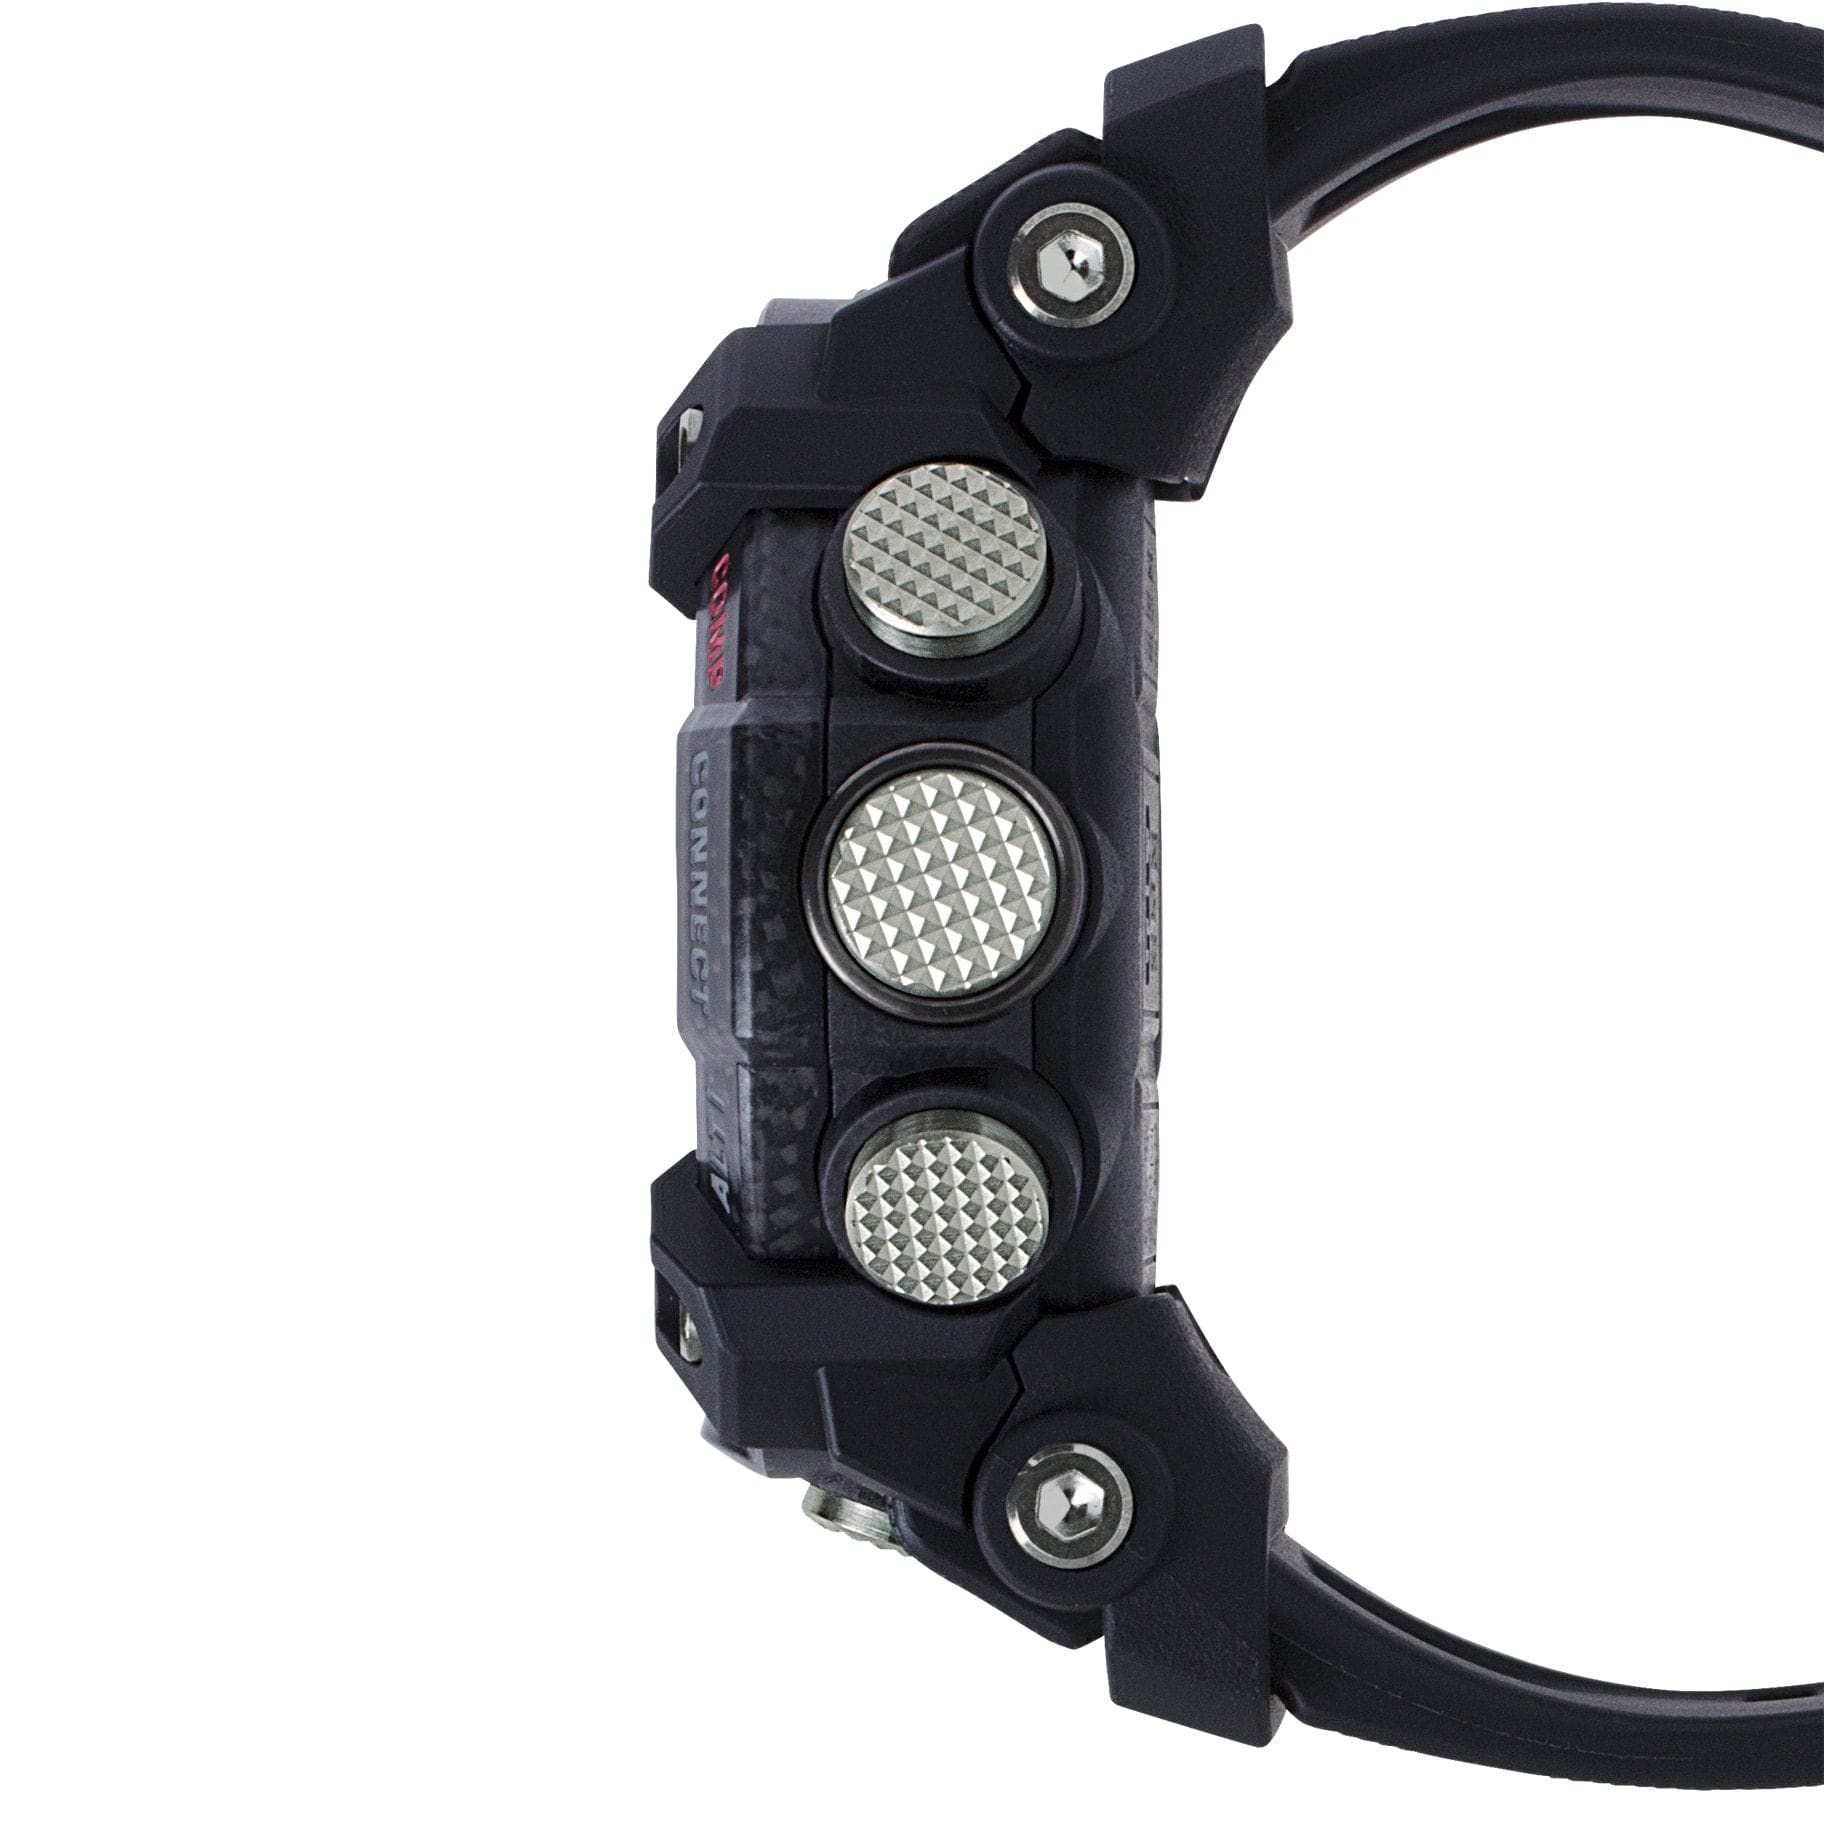 Casio Mudmaster G-Shock with Quad Sensor Black Resin Watch GGB100-1A